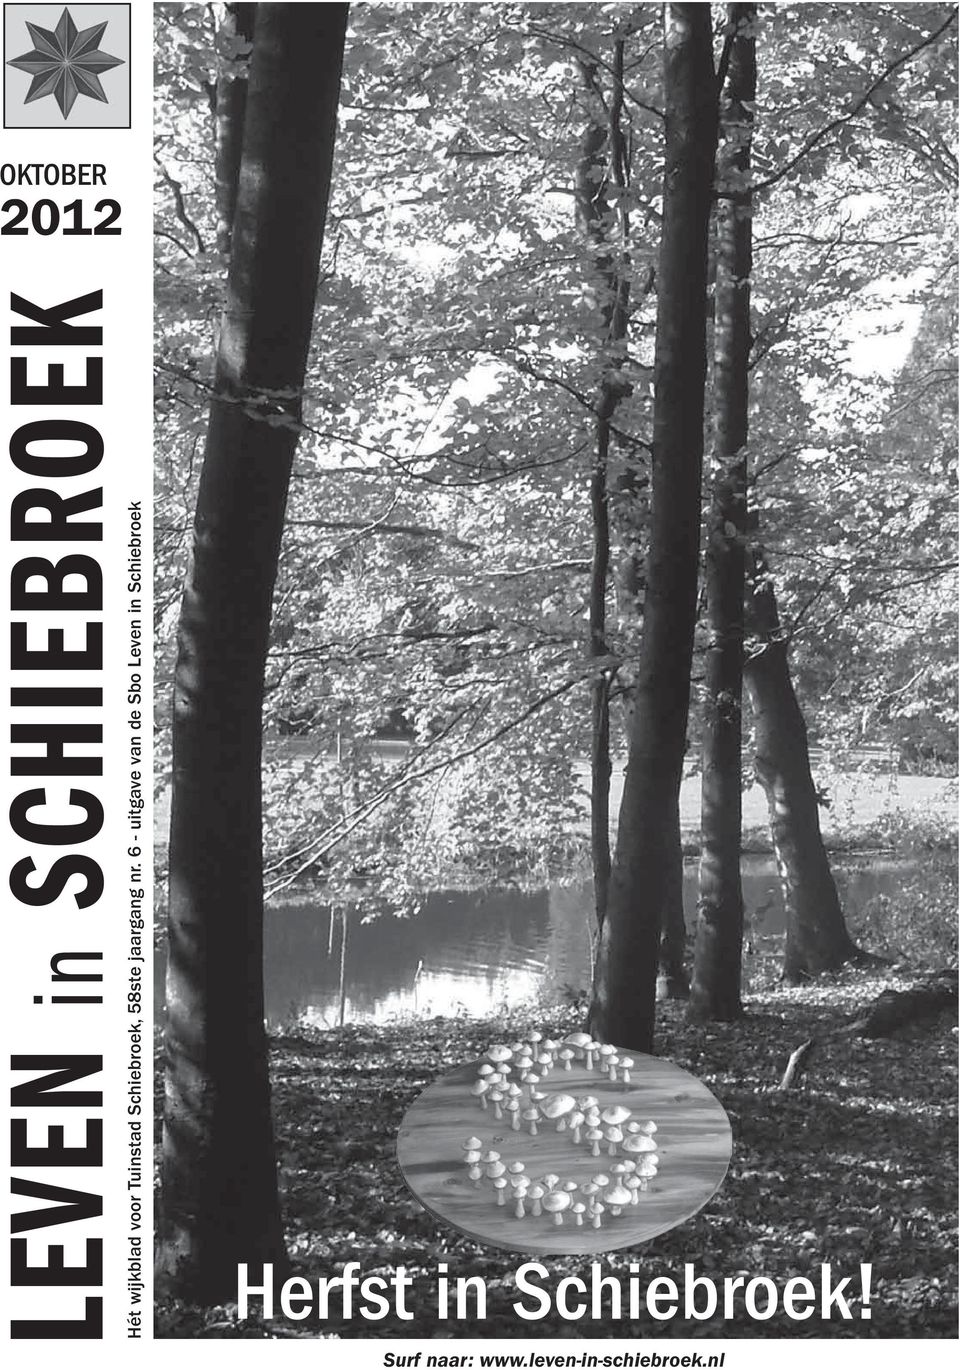 6 - uitgave van de Sbo Leven in Schiebroek